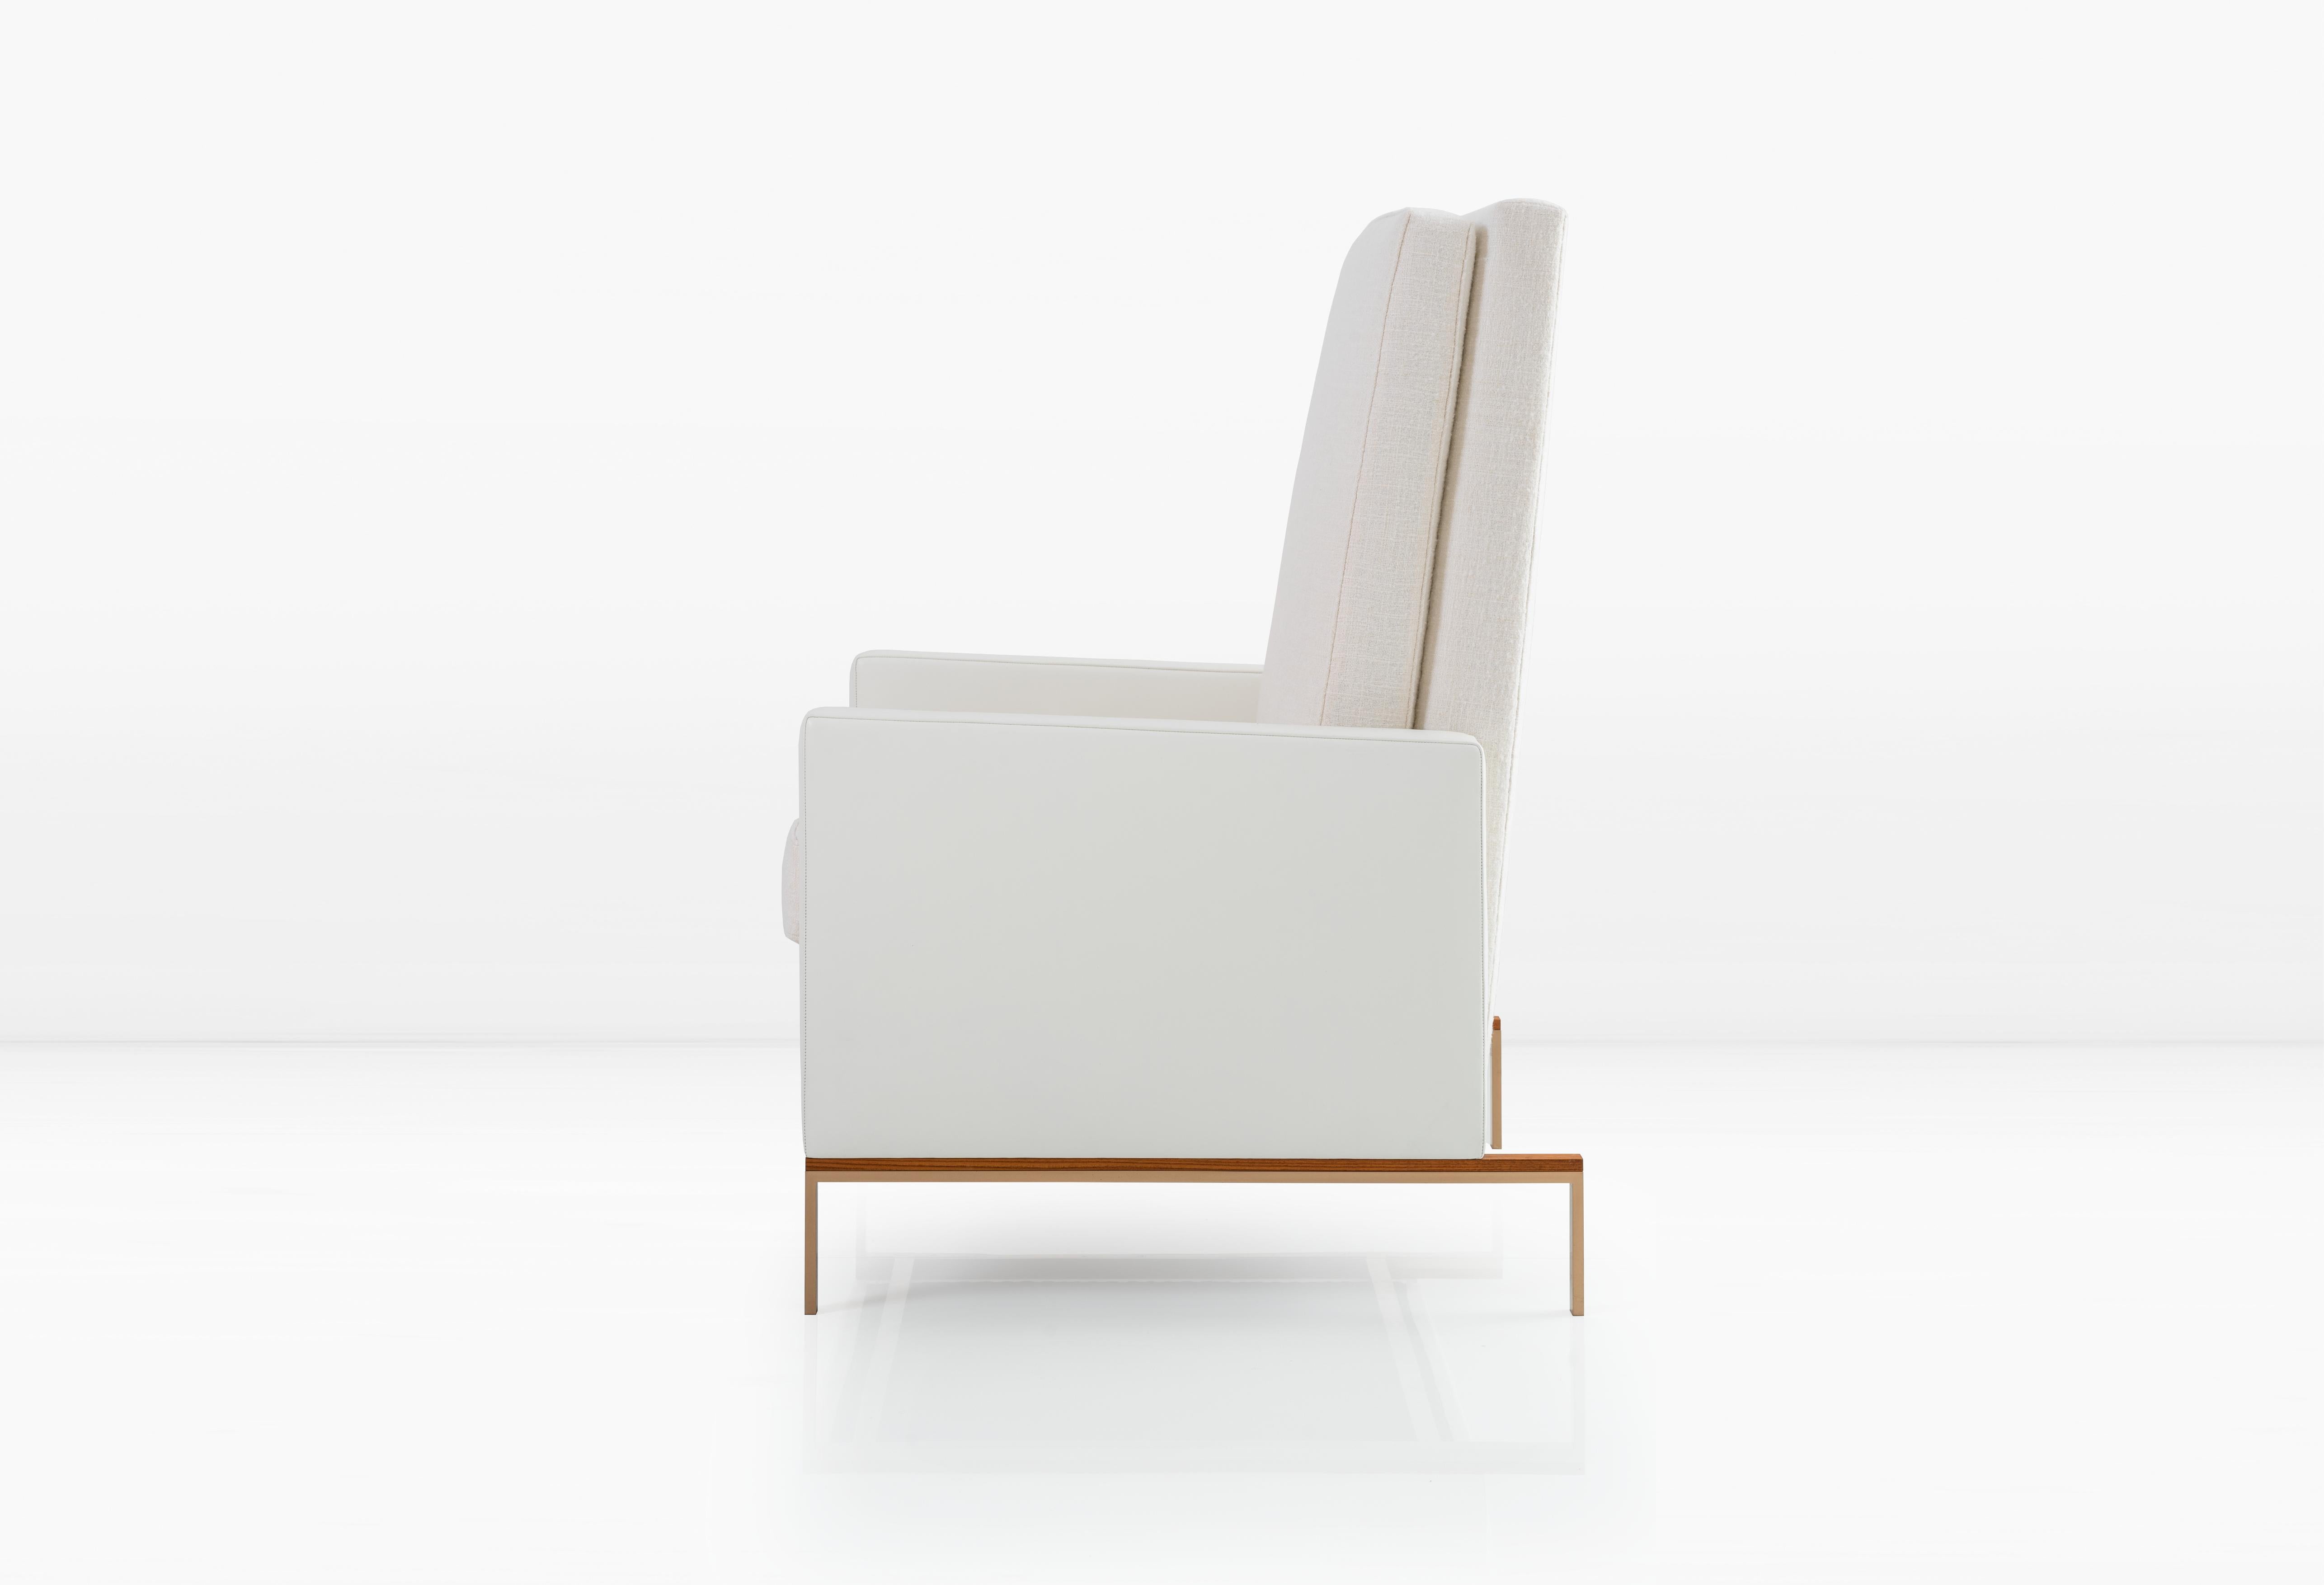 Der Larkin Chair verbindet architektonisches Design mit Komfort und besteht aus weißen Boucle- und Ledermaterialien sowie einem Holzgestell aus Silicon Bronze. 

B 27